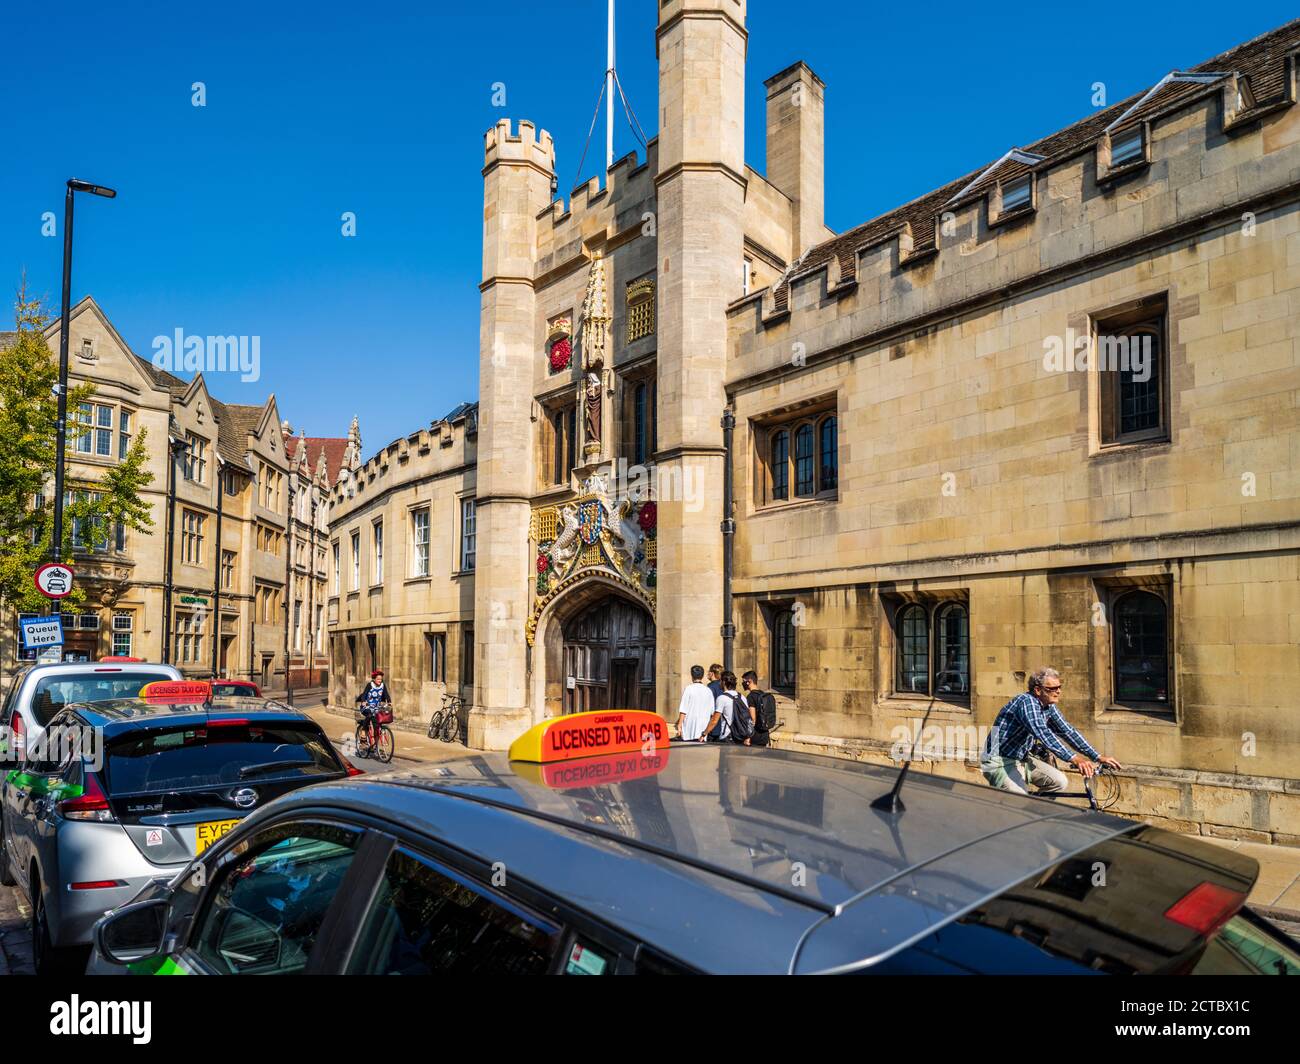 Cambridge City Centre - taxis et vélo passent devant le Chirts College Gatehouse, une partie de l'université de Cambridge, dans le centre historique de Cambridge au Royaume-Uni. Banque D'Images